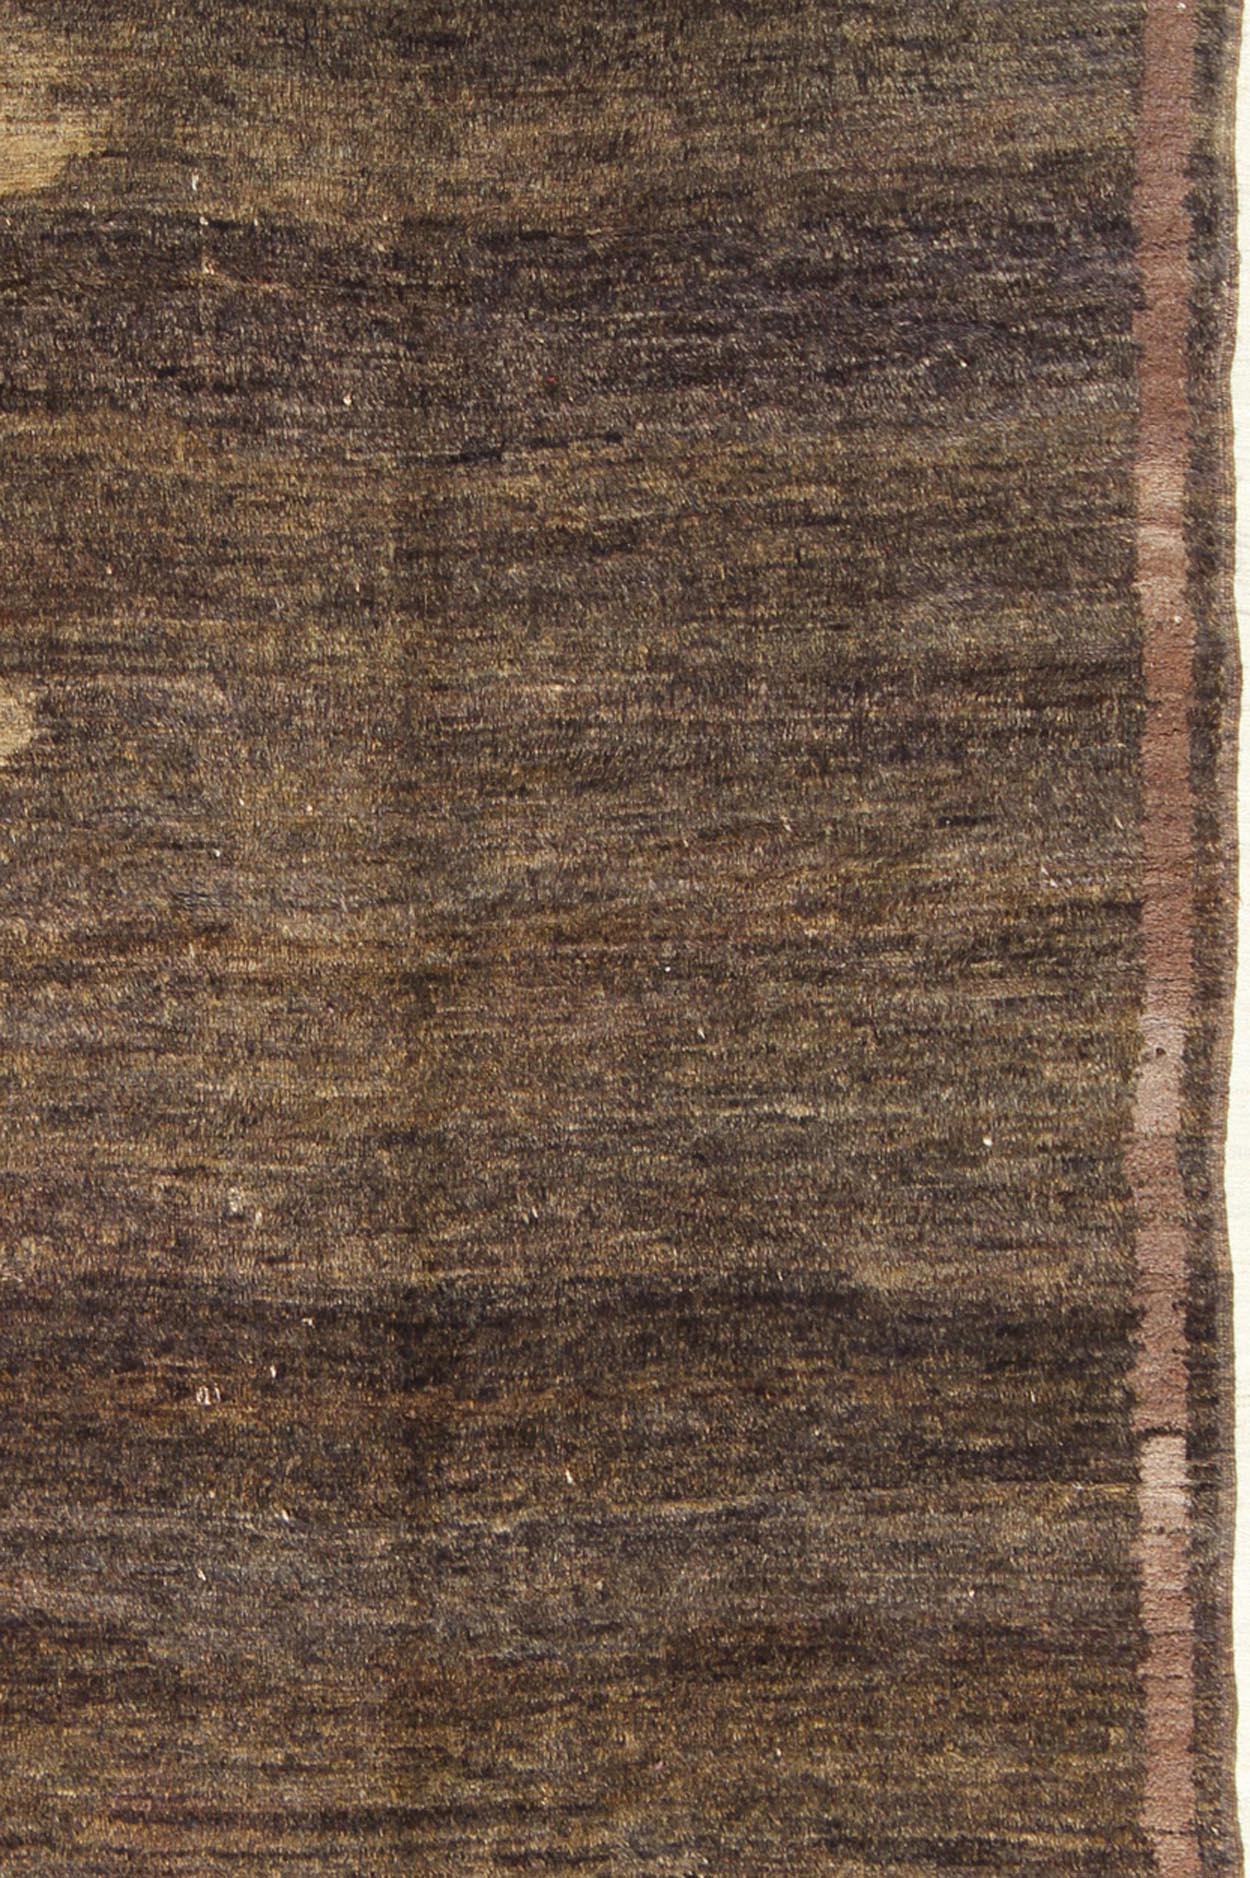 Tapis marocain naturel à motif tribal simple Keivan Woven Arts / tapis/BDS-21281 origine/Morocco

Ce motif marocain couvre un champ brun et est enfermé dans une bordure brune plus foncée. La laine utilisée dans ces tapis est exceptionnellement